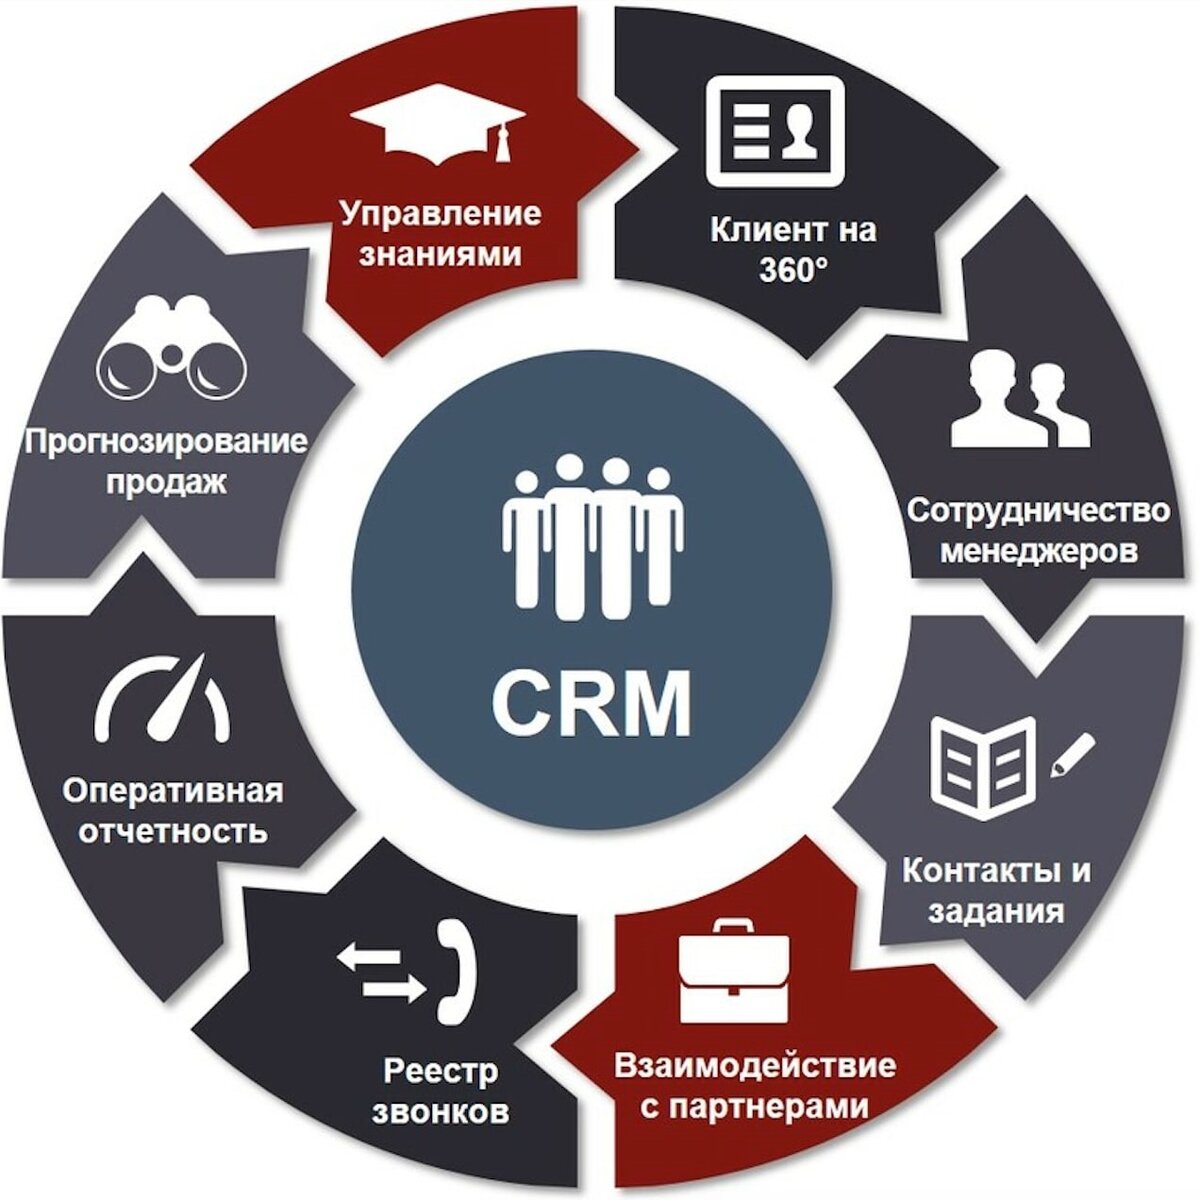 CRM системы управления взаимоотношениями с клиентами. GRM - система управления ЗВАИМООТНОШЕНИЯ С клиентами. CRM (customer relationship Management) системы. CRM системы что это. Использование бизнес информации